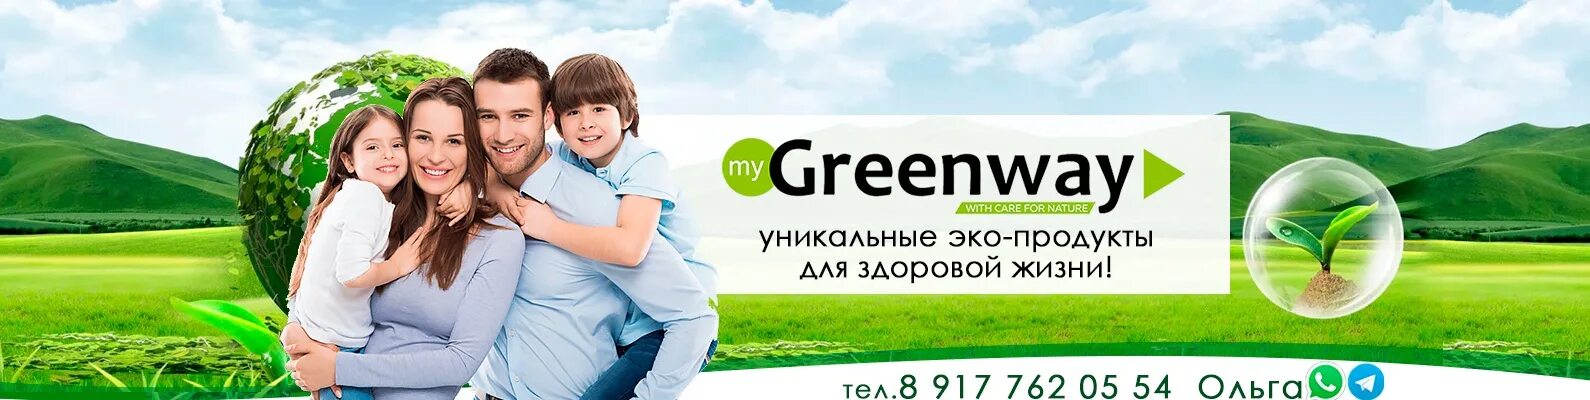 Гринвей обложка для ВК. ЭКОДОМ Greenway. Greenway логотип. Визитки Гринвей.